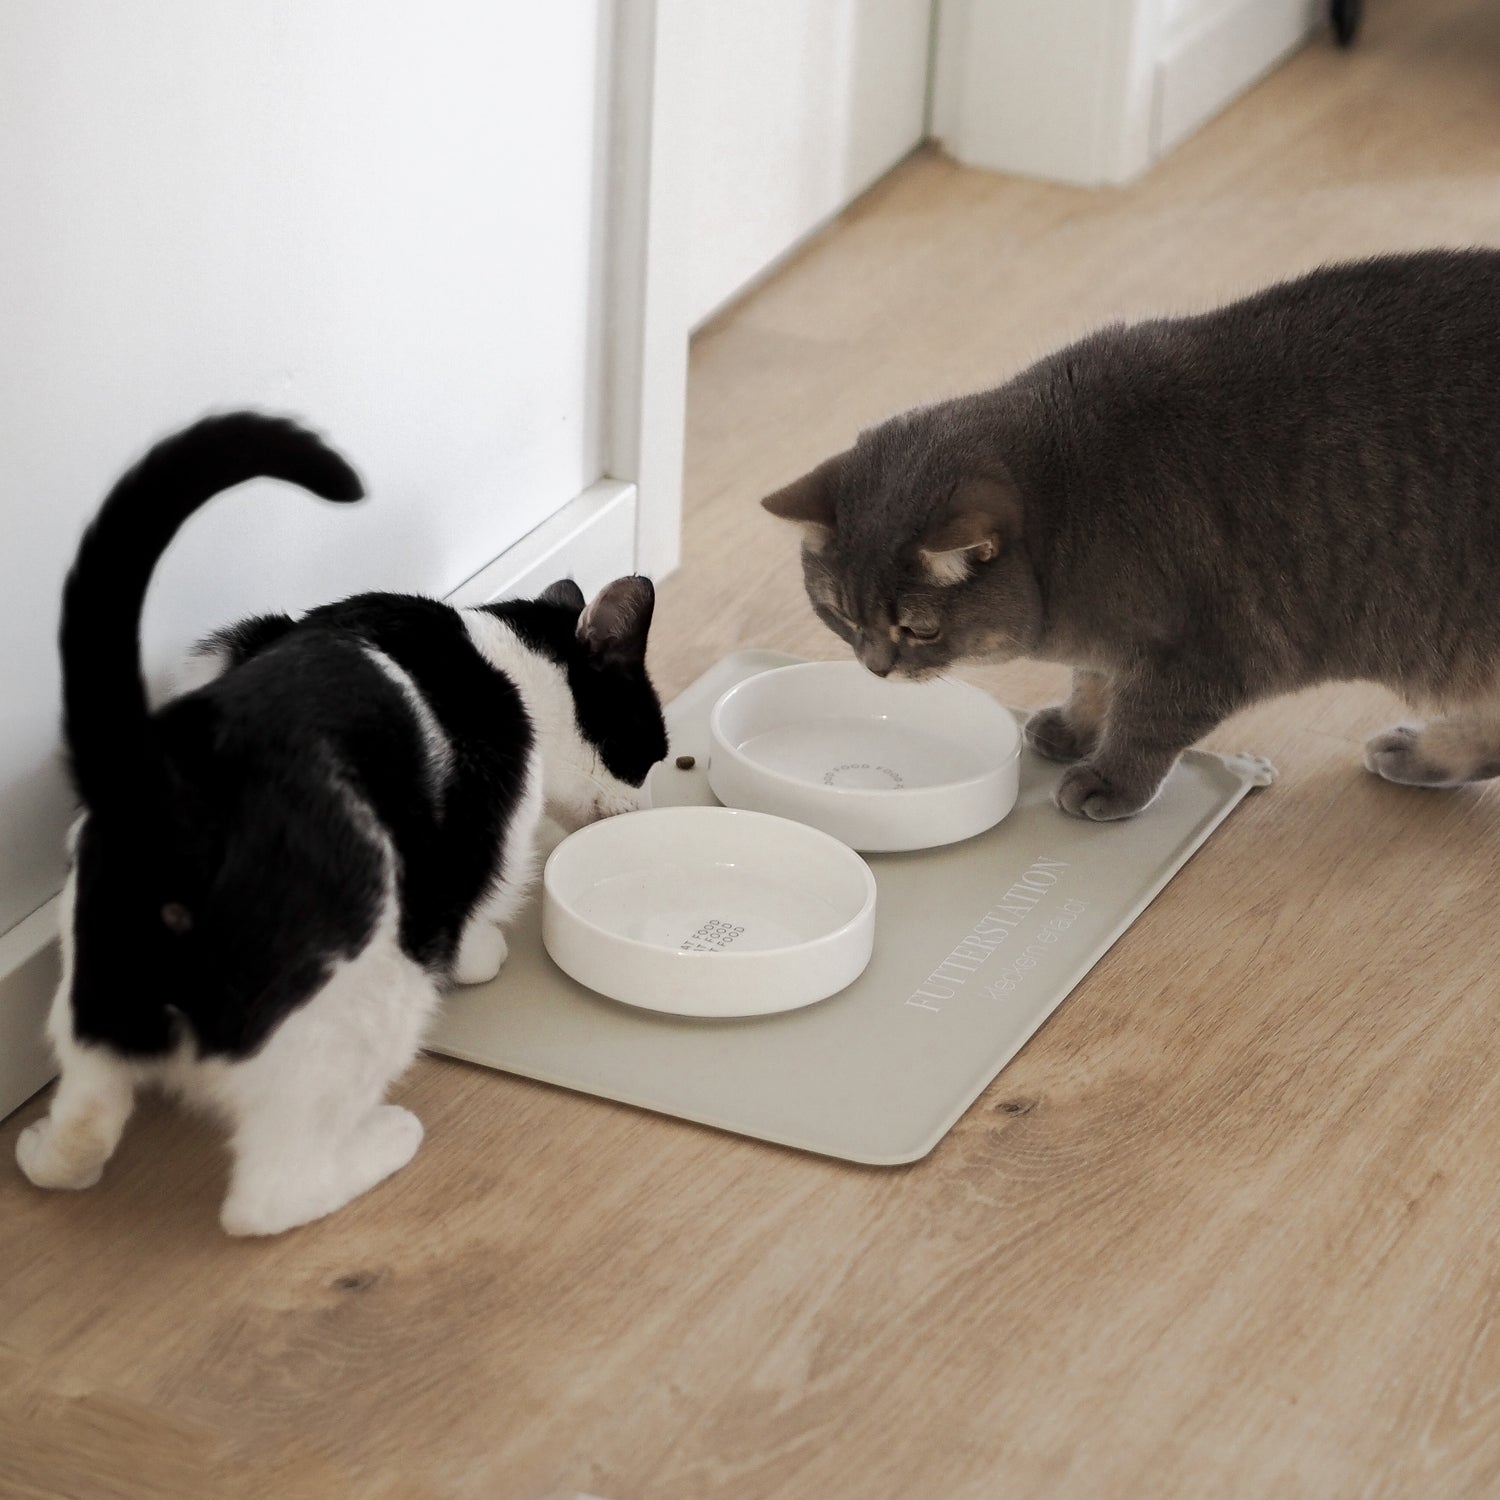 Artgerechter Futterplatz für Katzen bestehend aus einer beigen Napfunterlage und zwei flachen Keramiknäpfen.